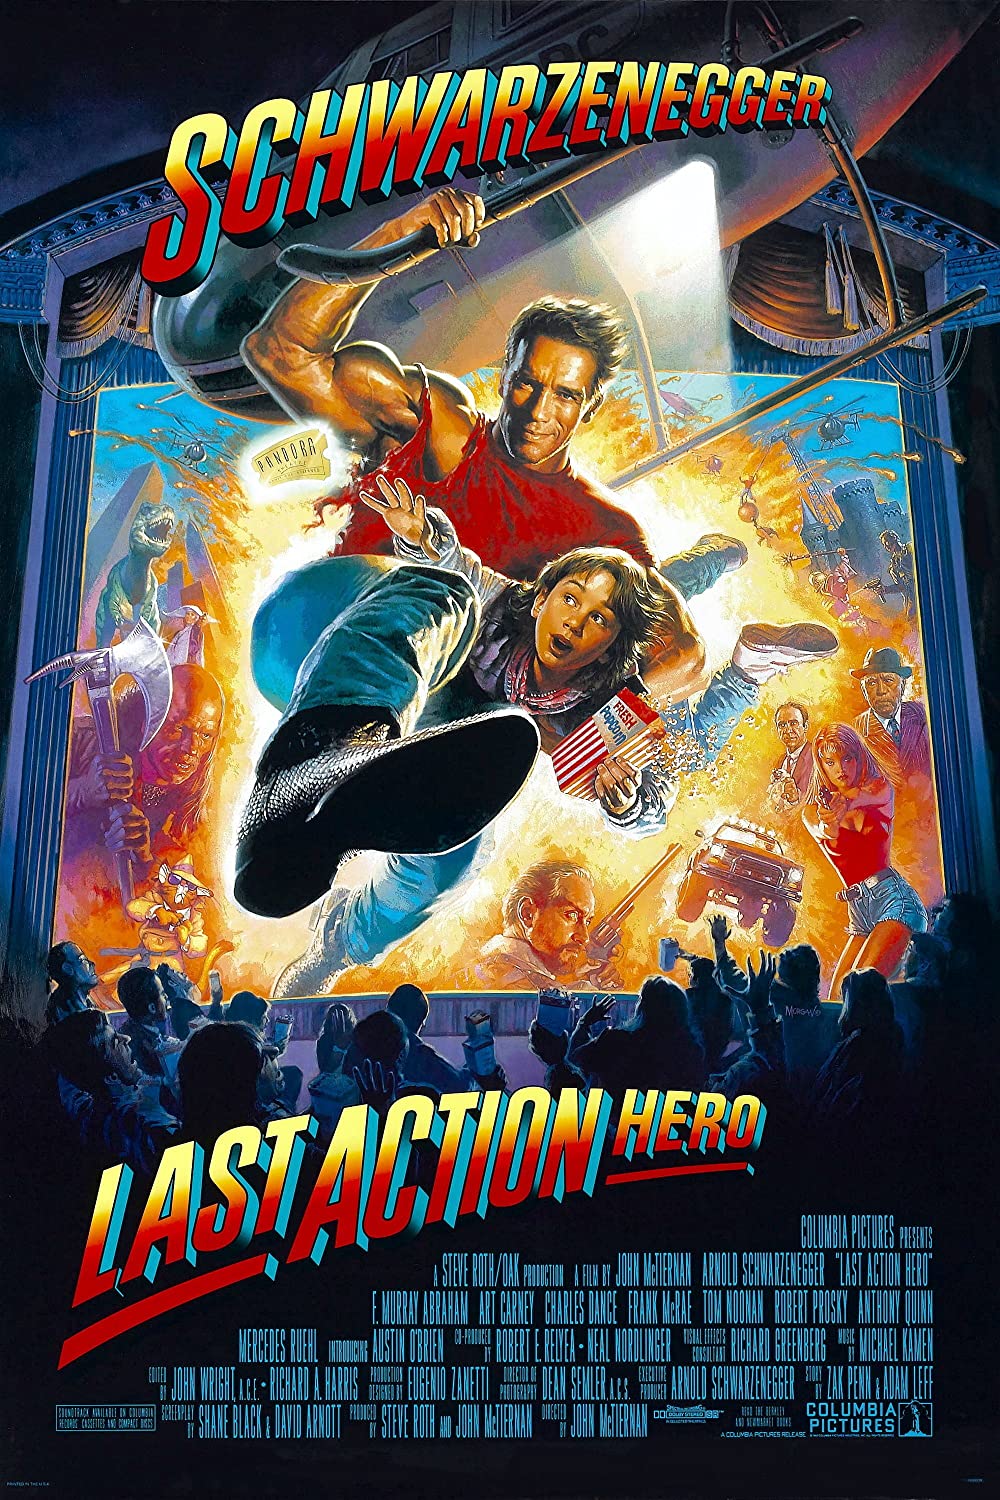 Filmbeschreibung zu Last Action Hero (OV)